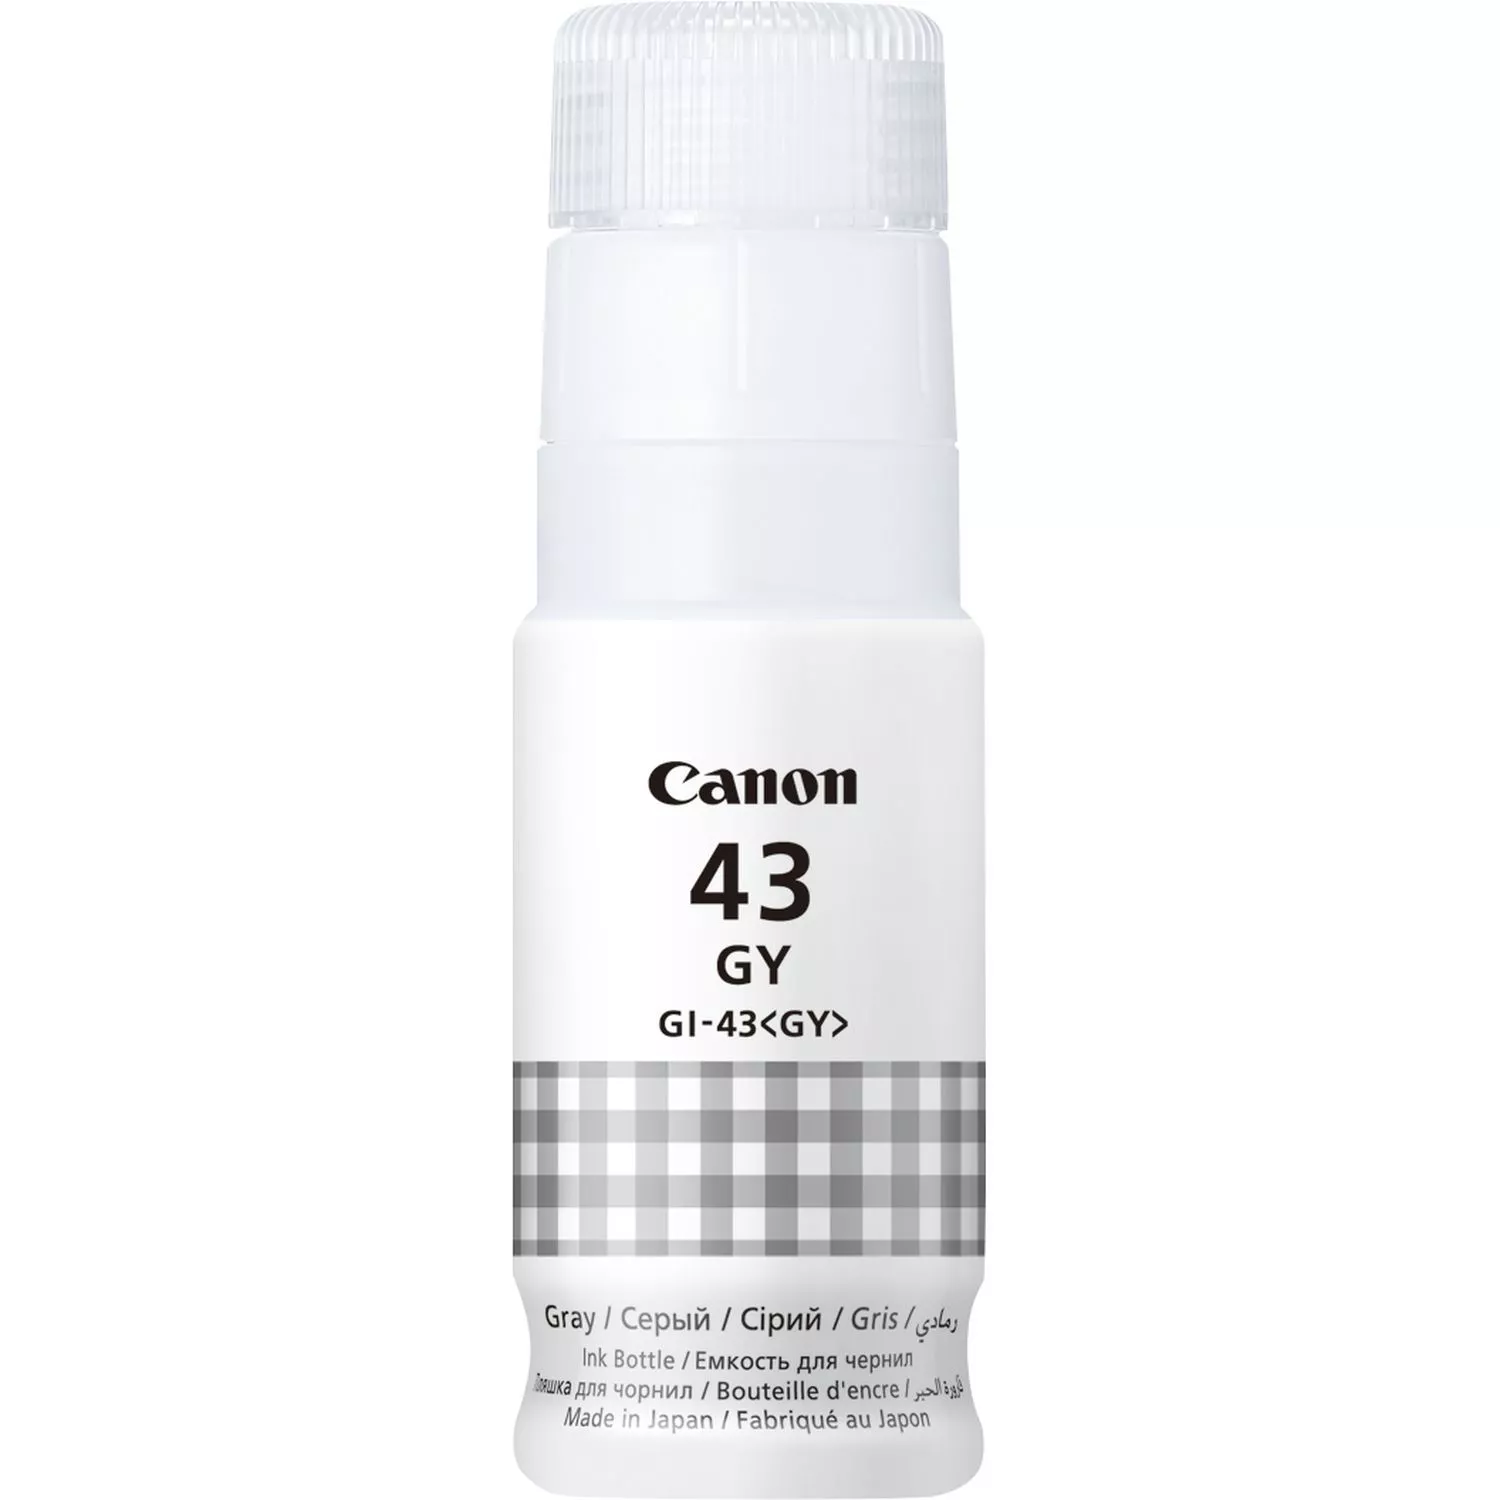 Achat CANON GI-43 GY EMB Grey Ink Bottle et autres produits de la marque Canon